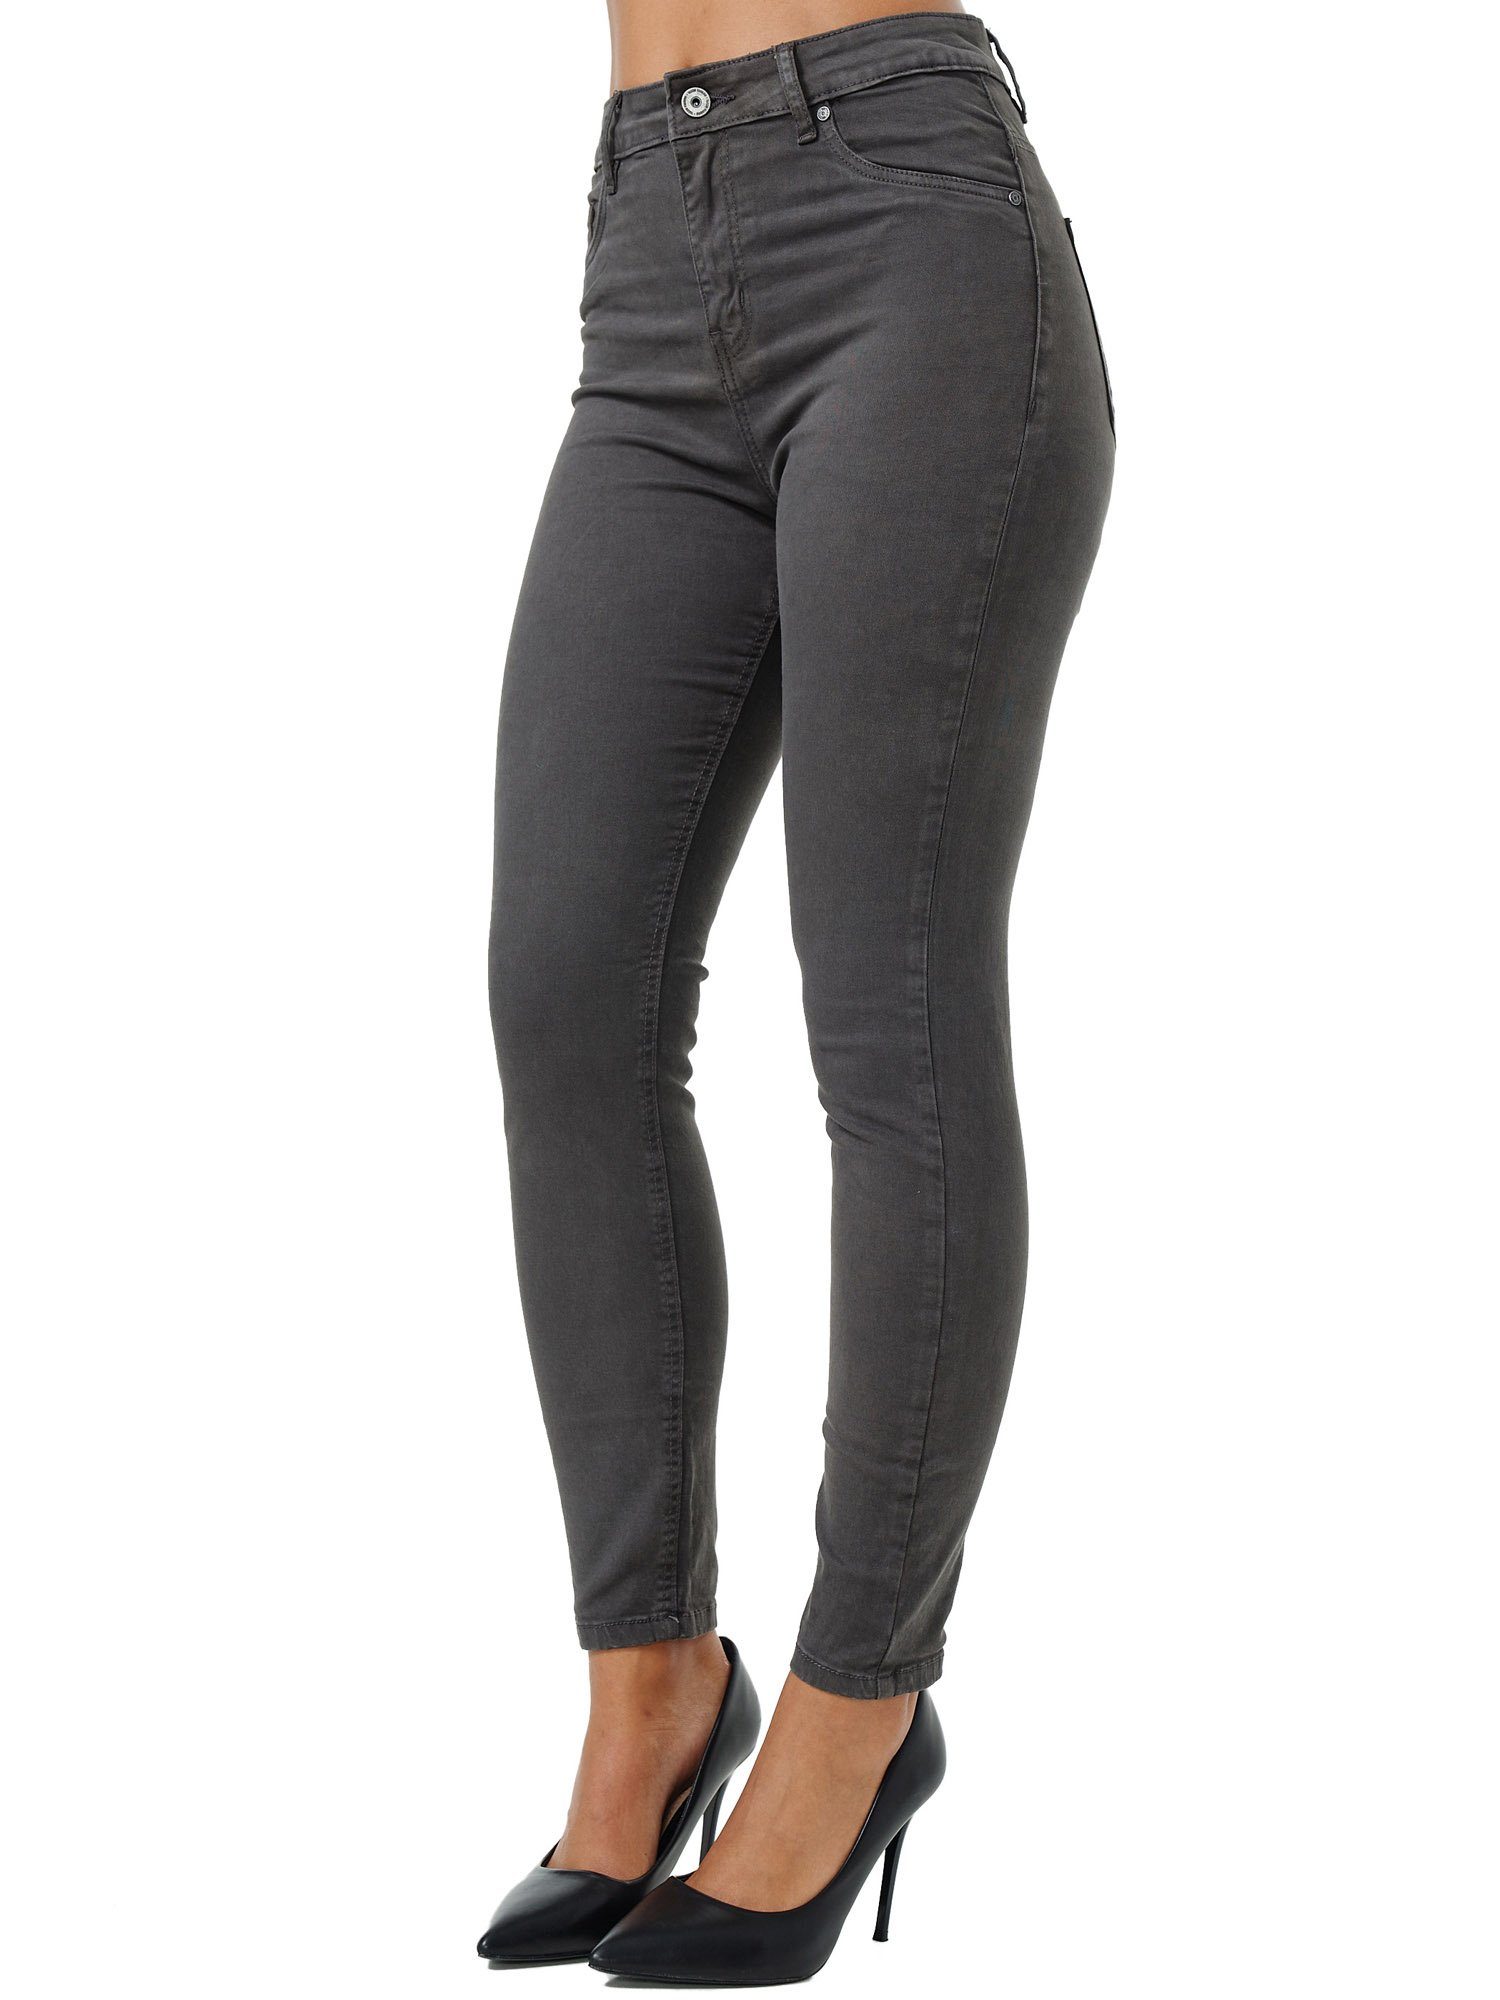 Skinny-fit-Jeans F103 Rise High Jeanshose Tazzio anthrazit Damen